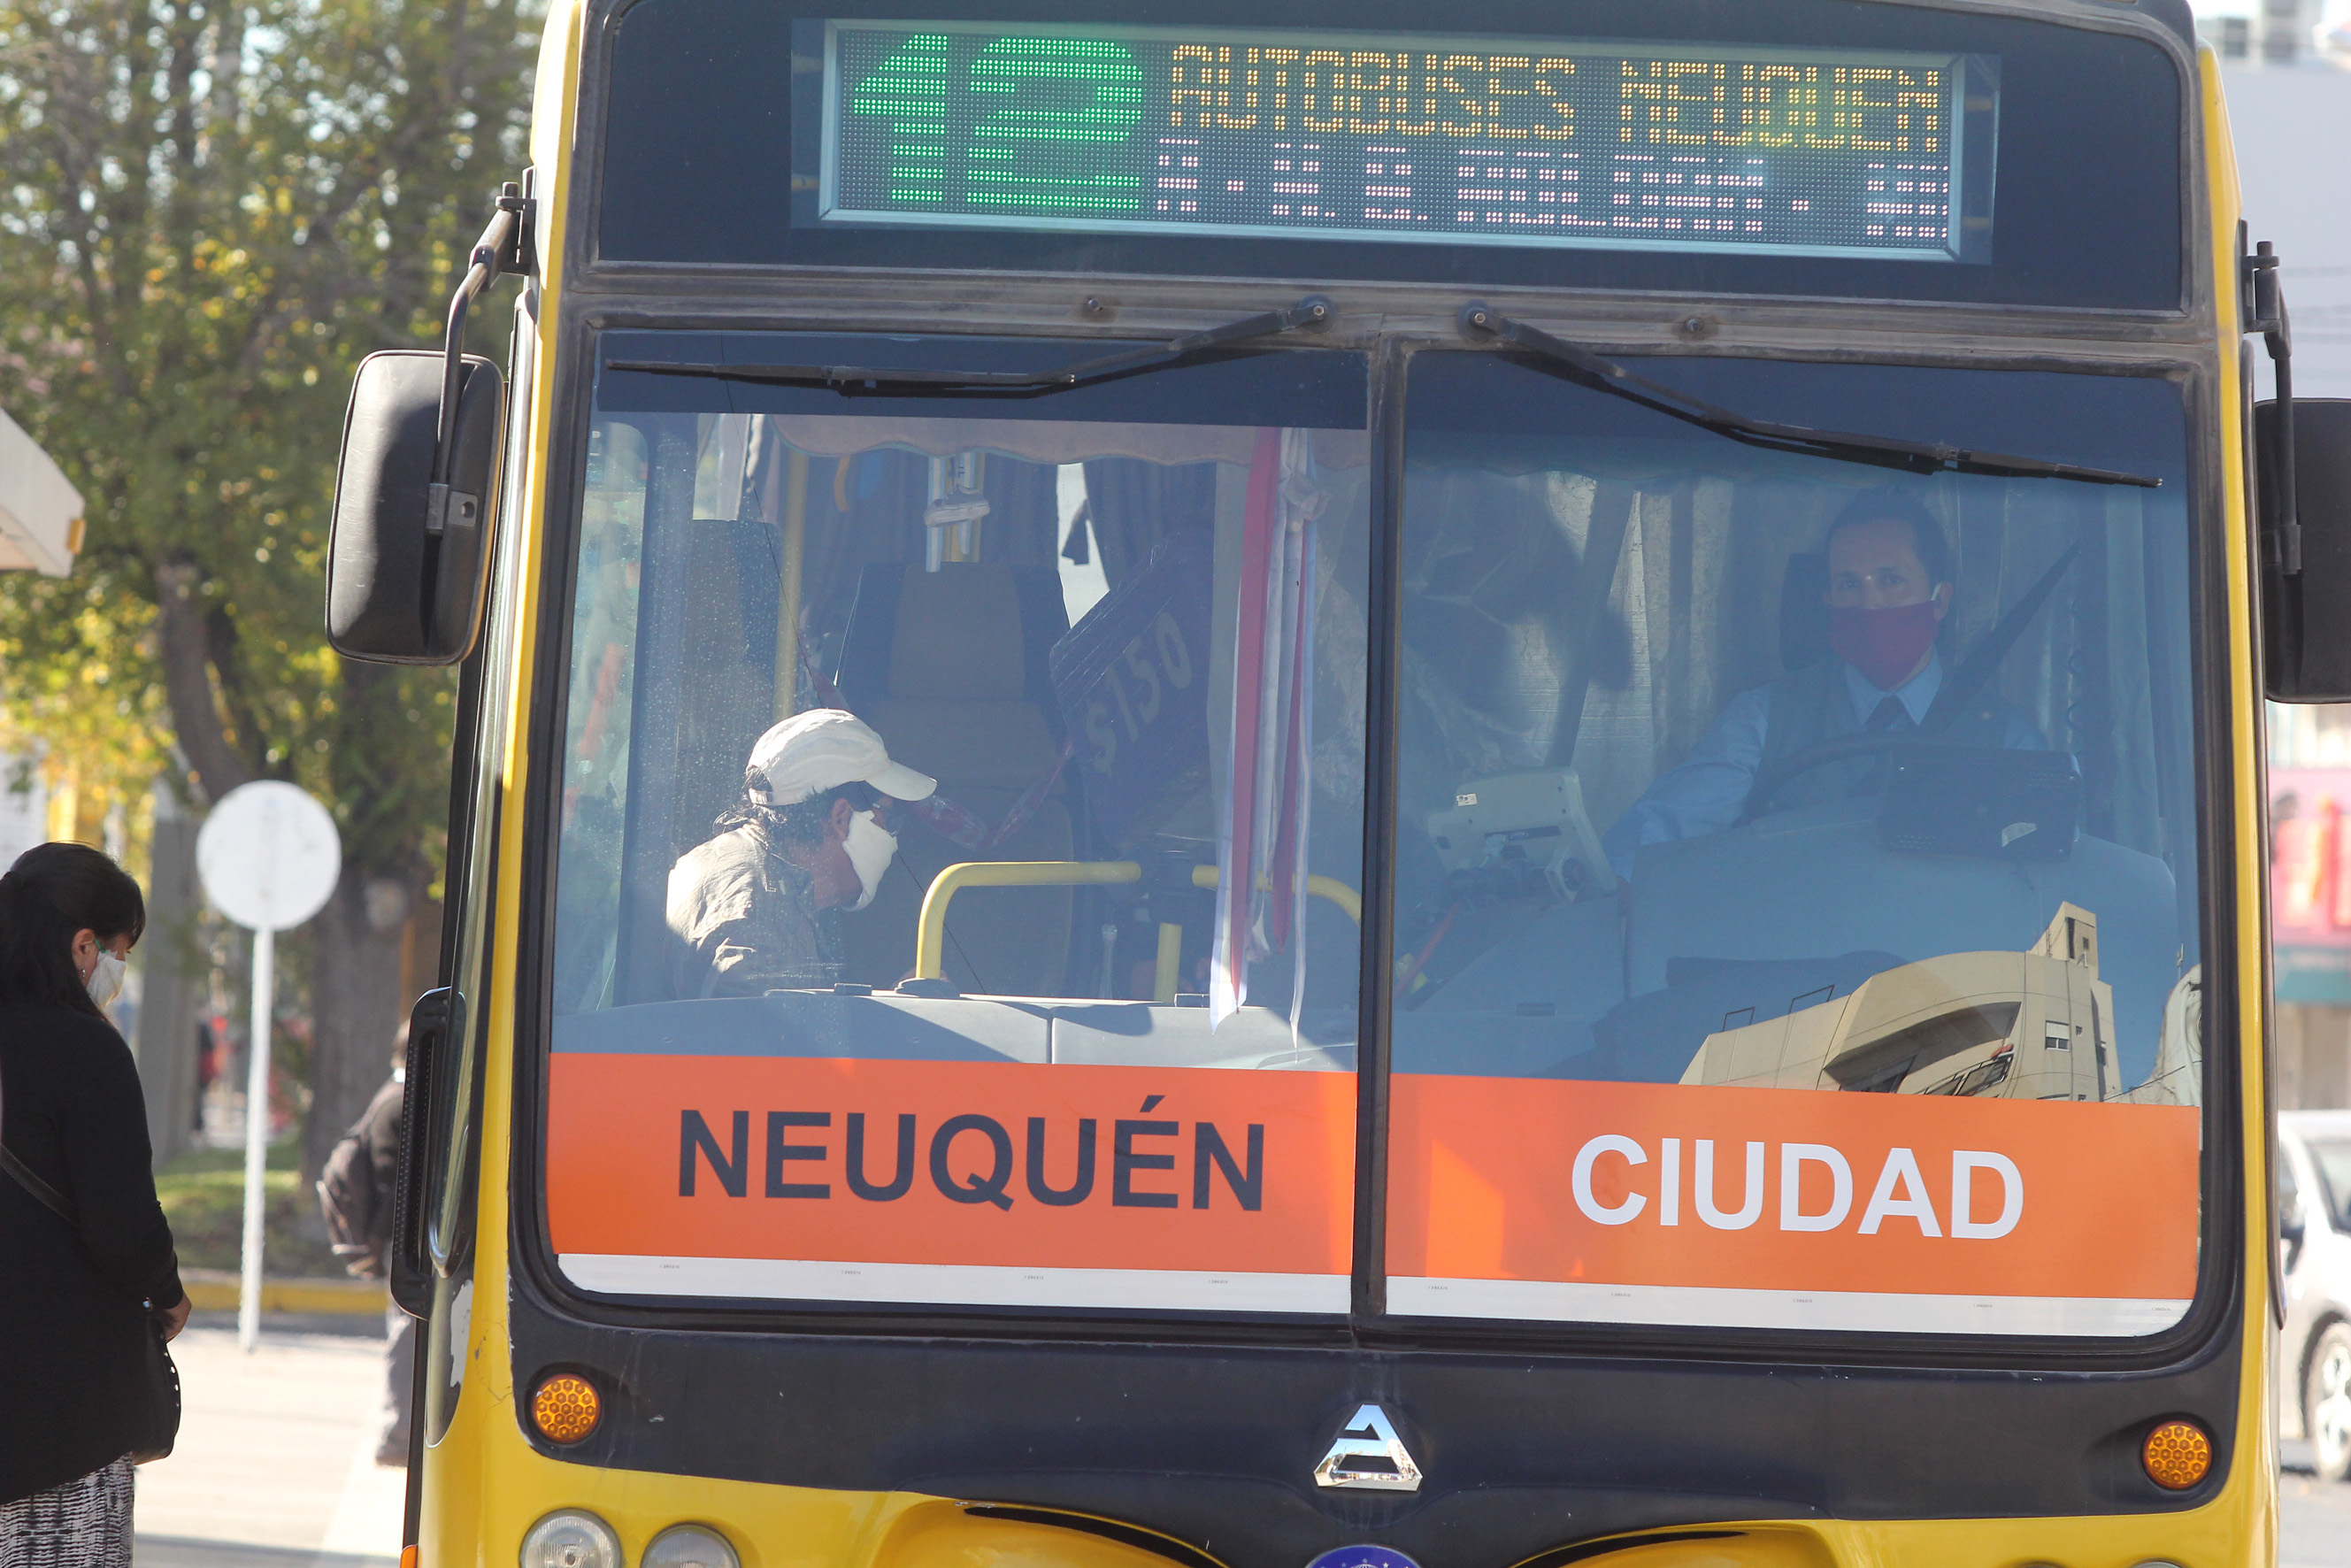 Mas unidades en la calle del transporte urbano de Neuquén (foto Oscar Livera)